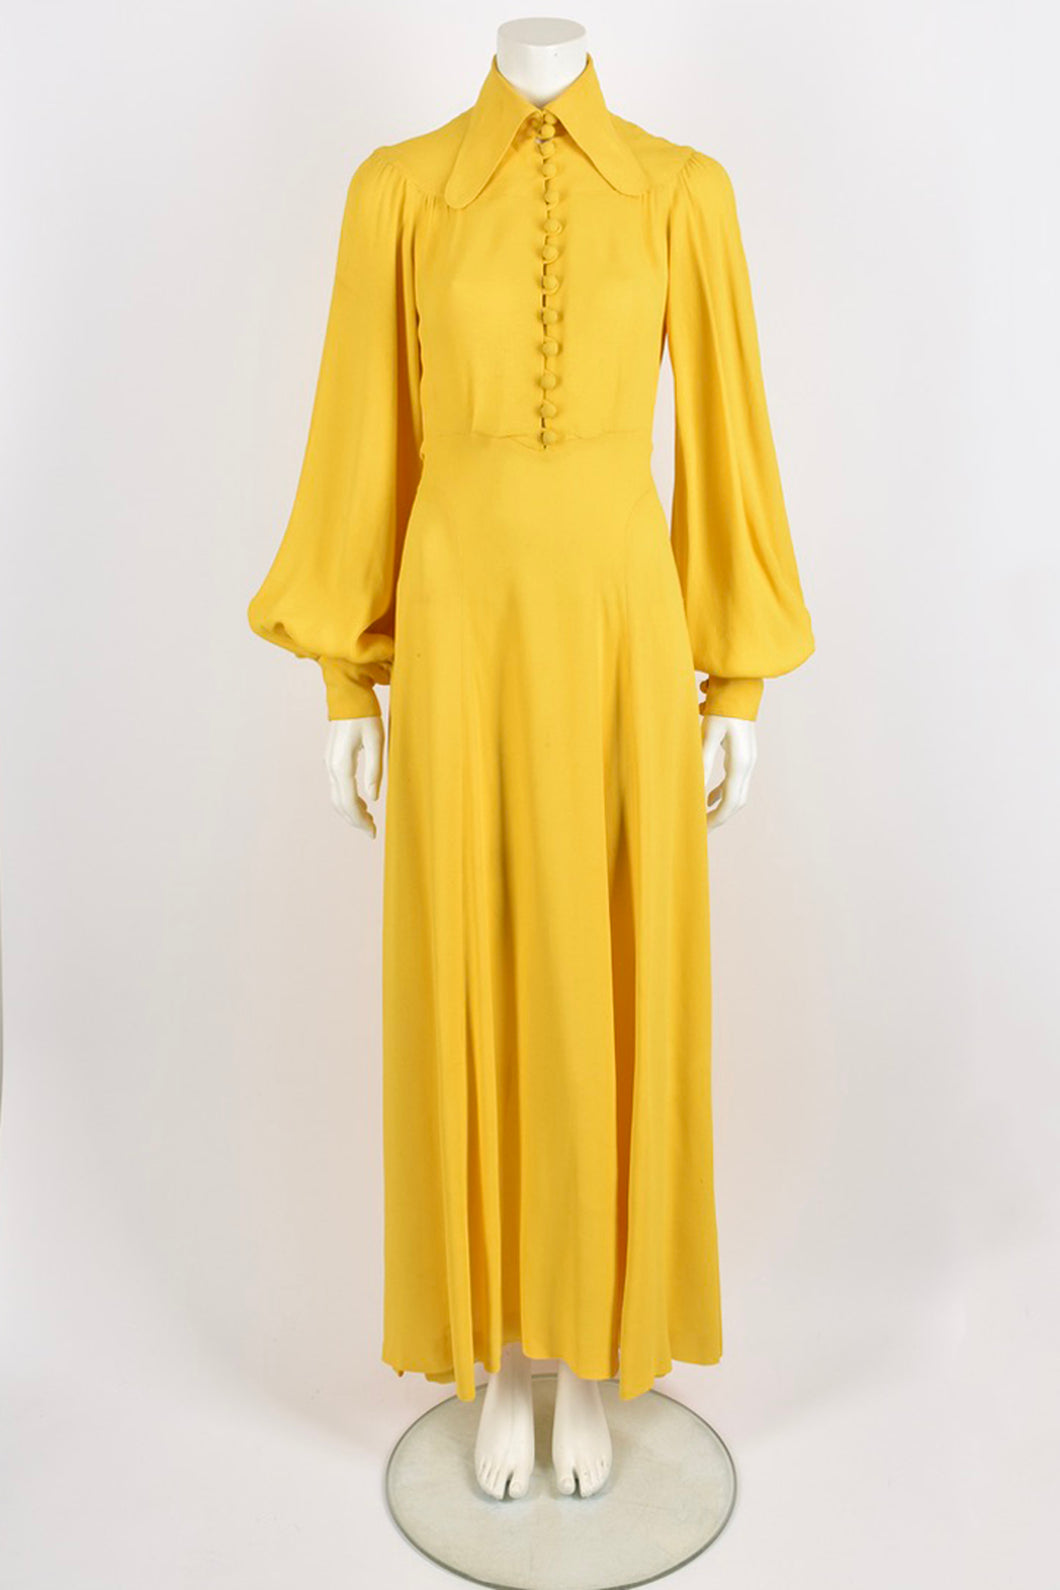 OSSIE CLARK 1970s yellow maxi dress S-M-L